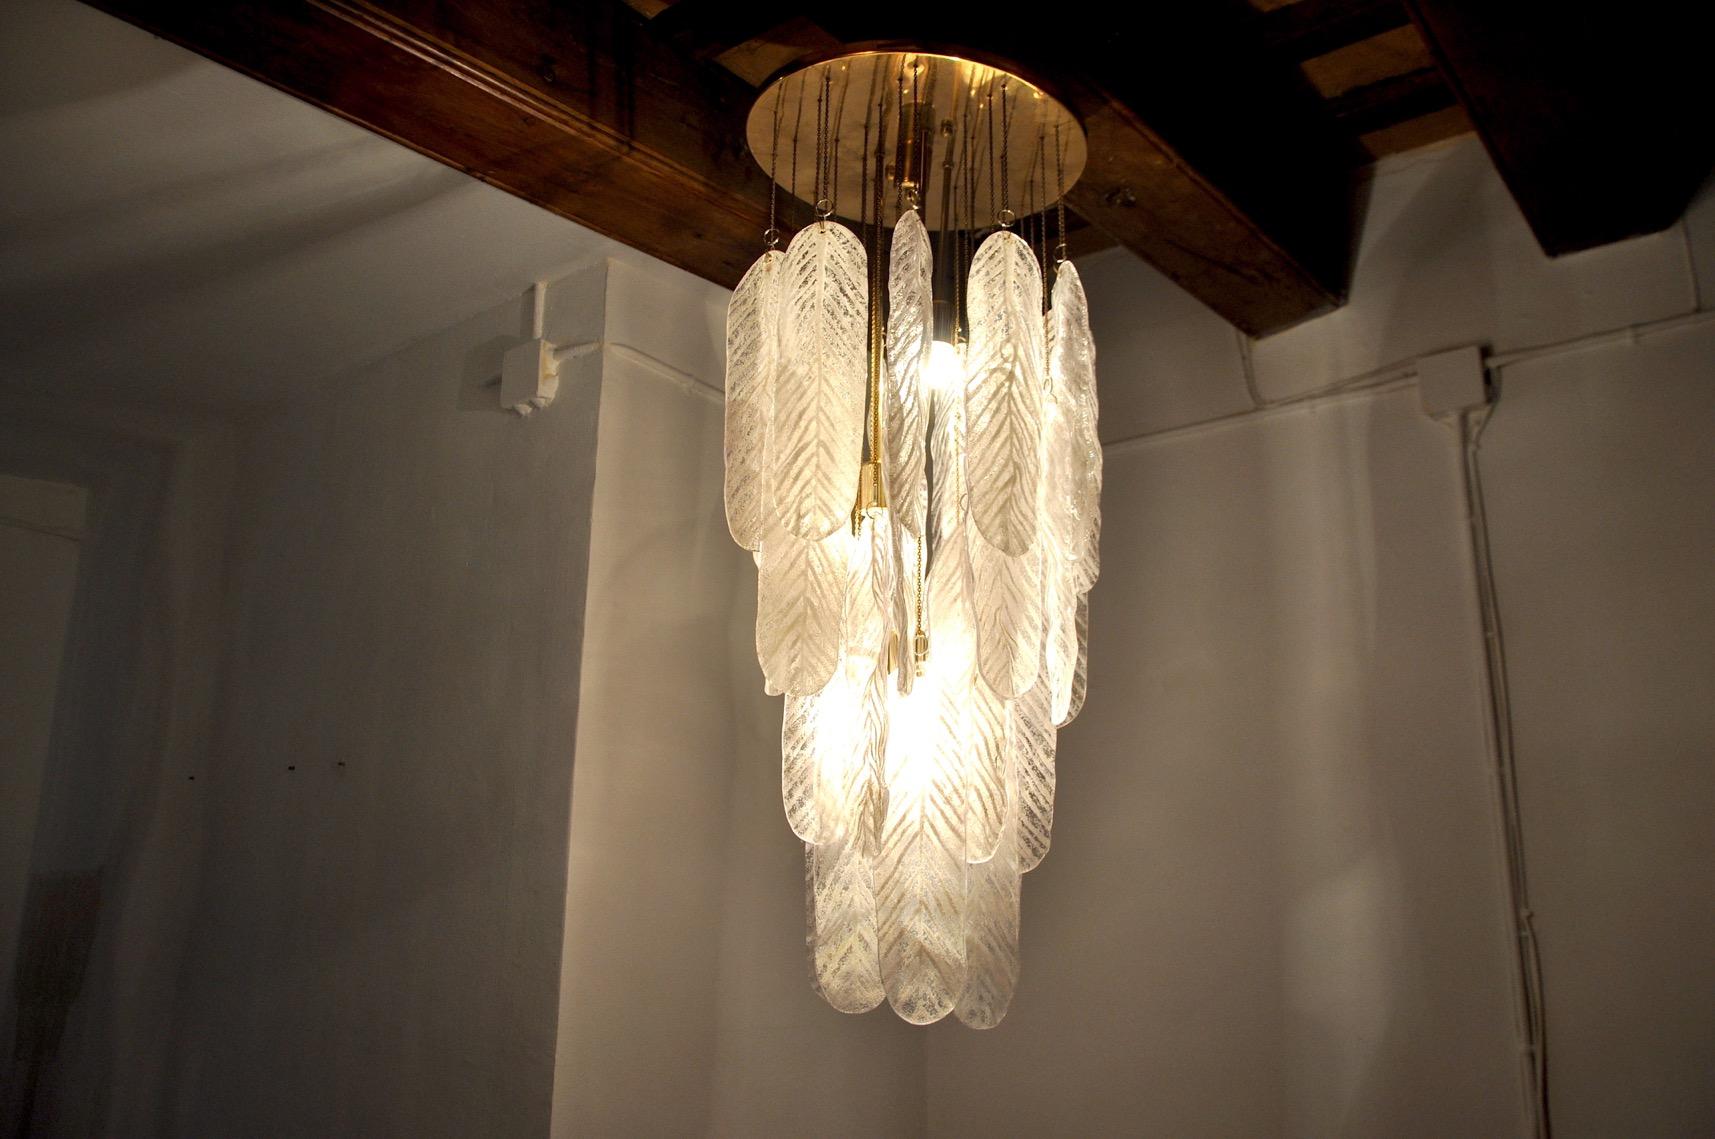 Superbe et rare lampe suspendue Murano conçue et produite à Murano, en Italie, dans les années 70. Ce magnifique lustre est composé de longues feuilles de verre blanc dépoli de Murano, suspendues en spirale à une structure en métal doré. Objet